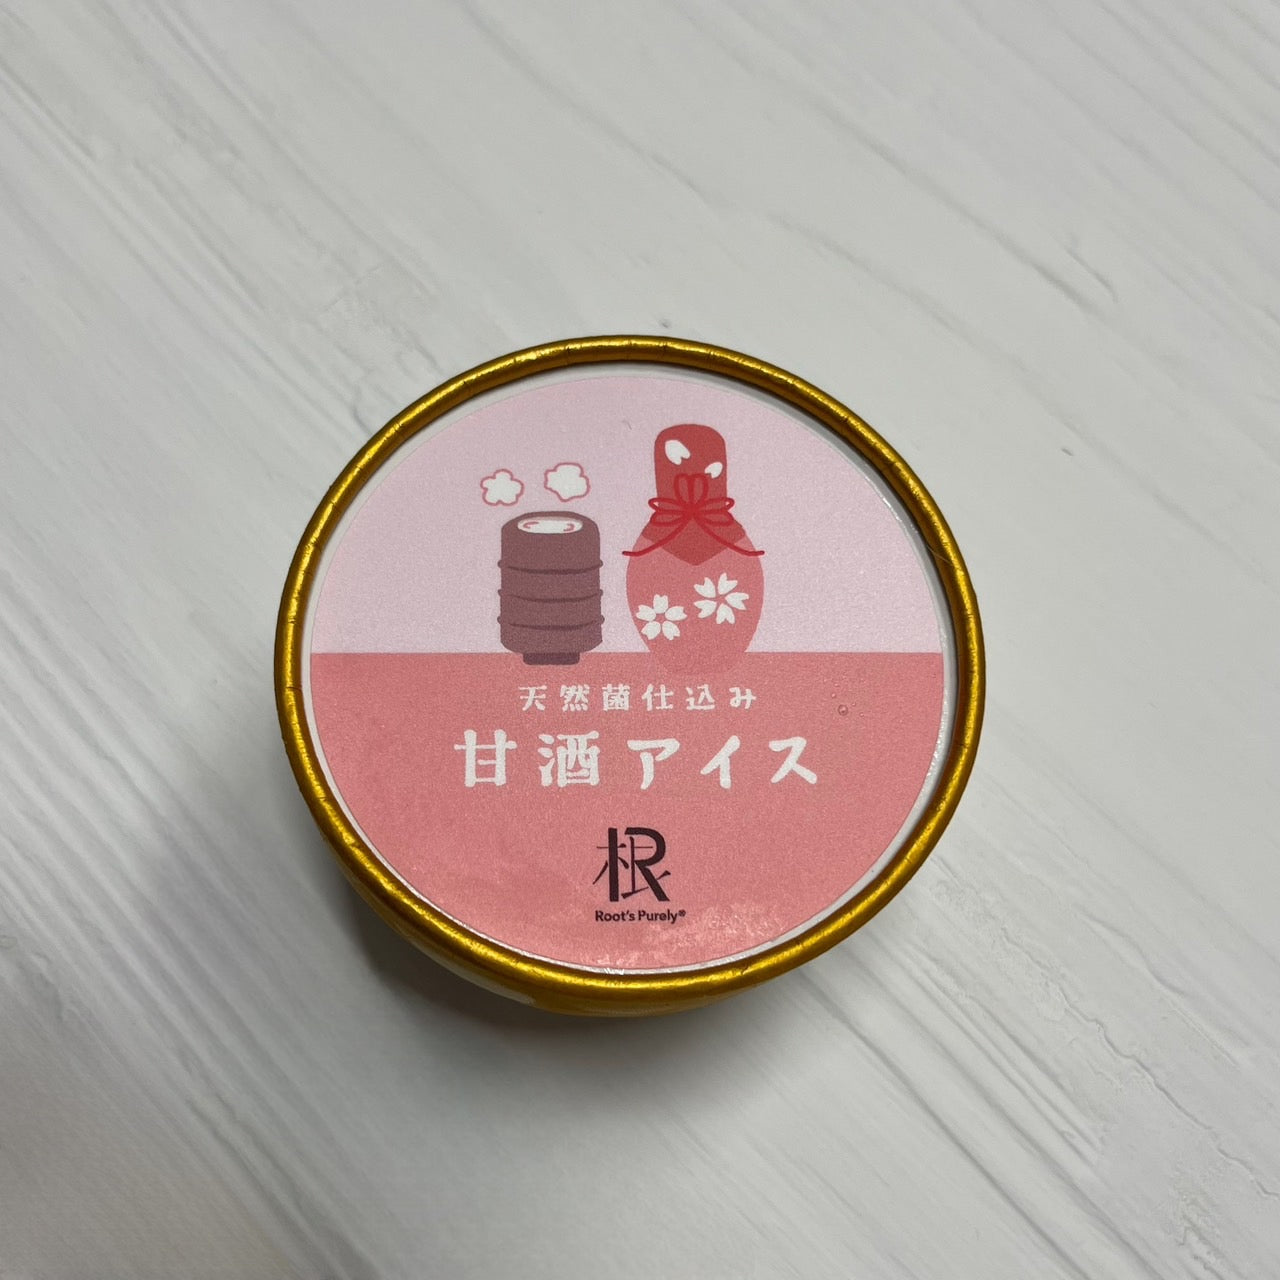 【ピュアリィオリジナル】~天然菌仕込み~ 甘酒アイス